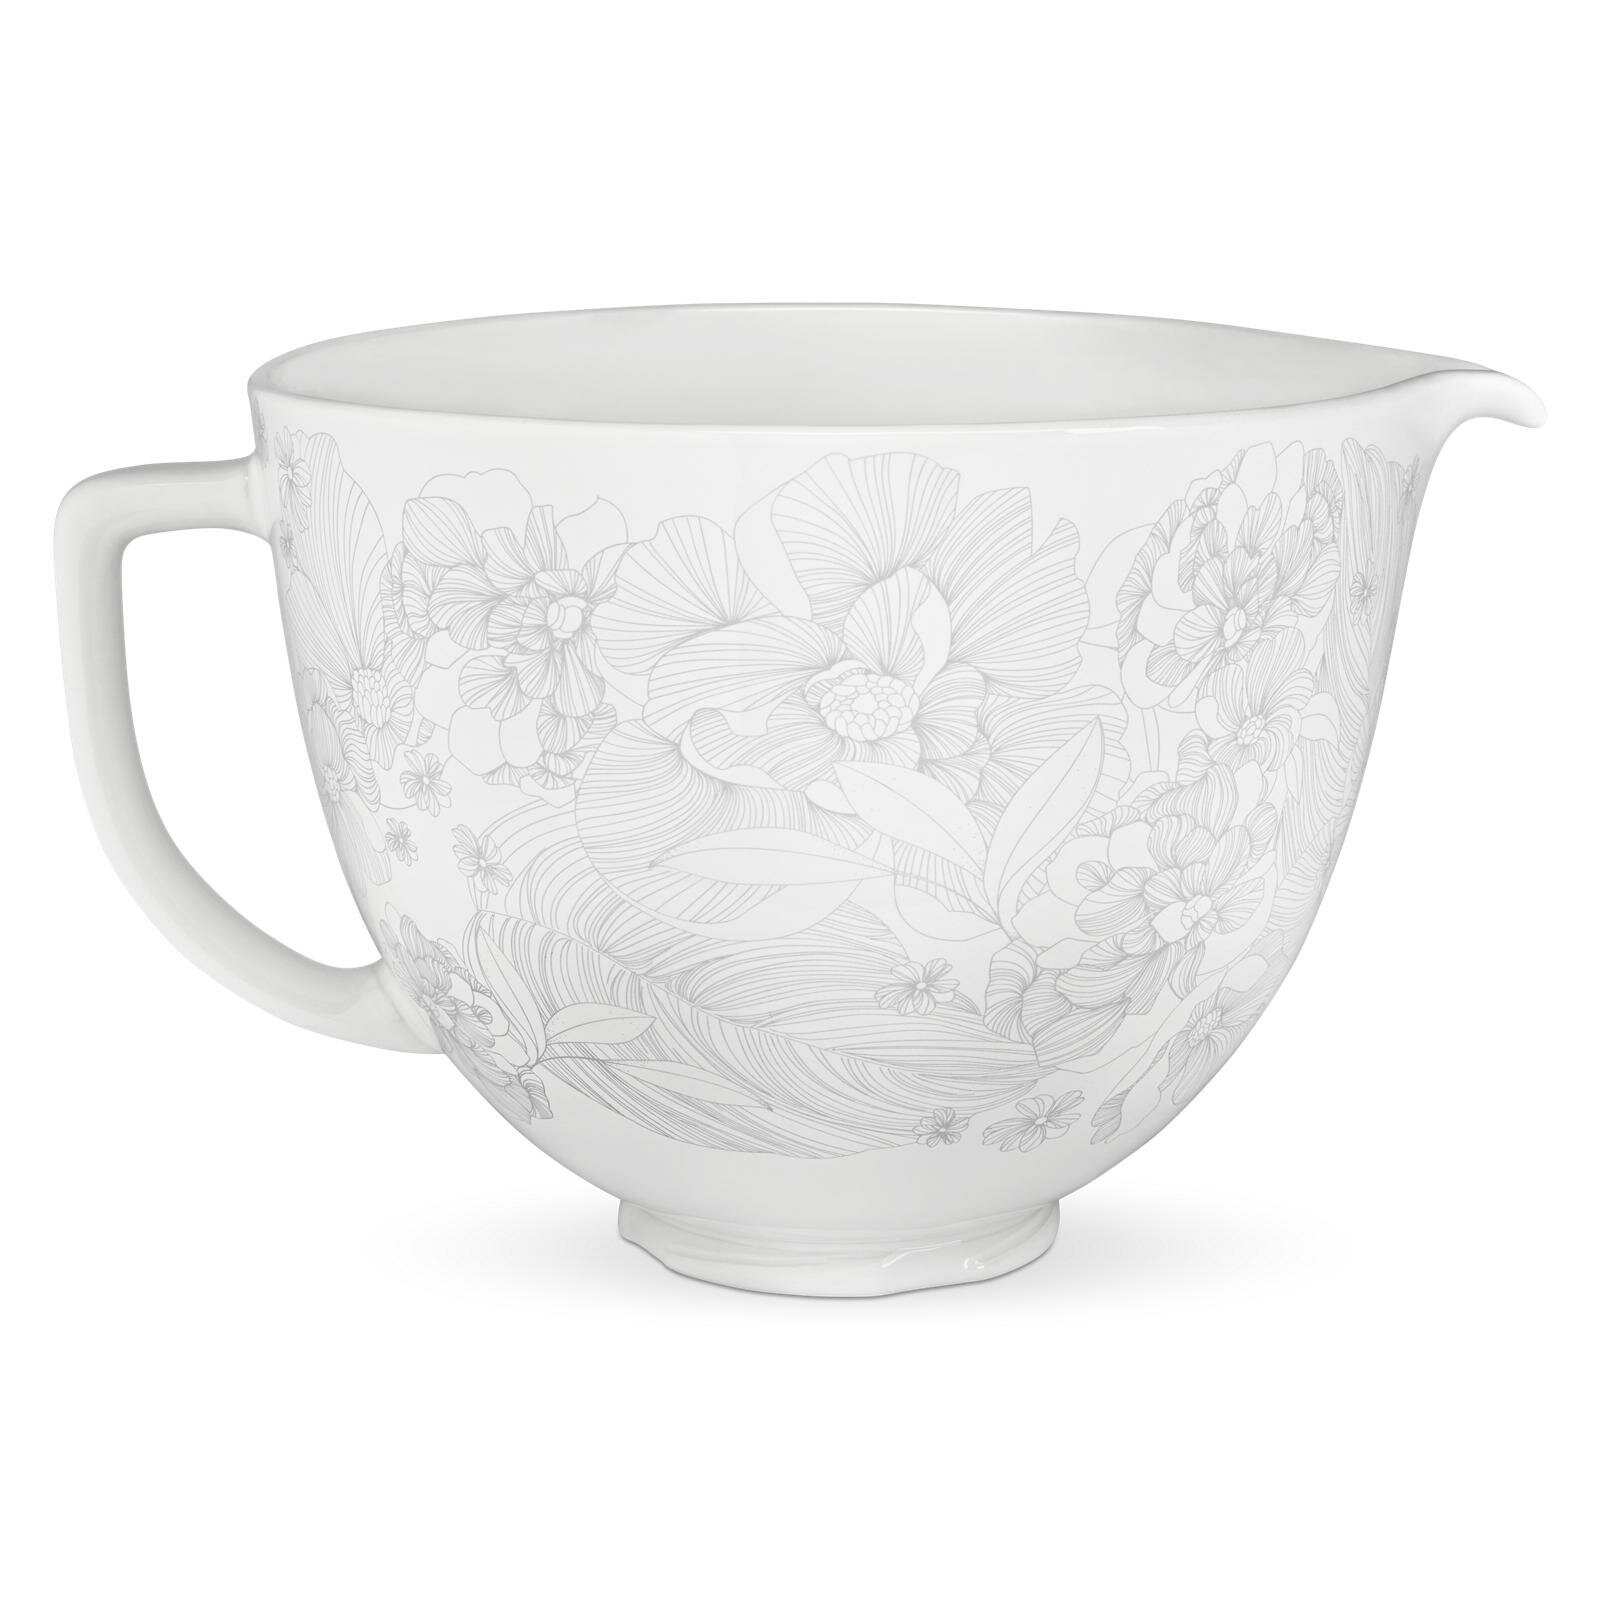 5-Quart Whispering Floral Ceramic Bowl + Flex Edge Beater for 4.5